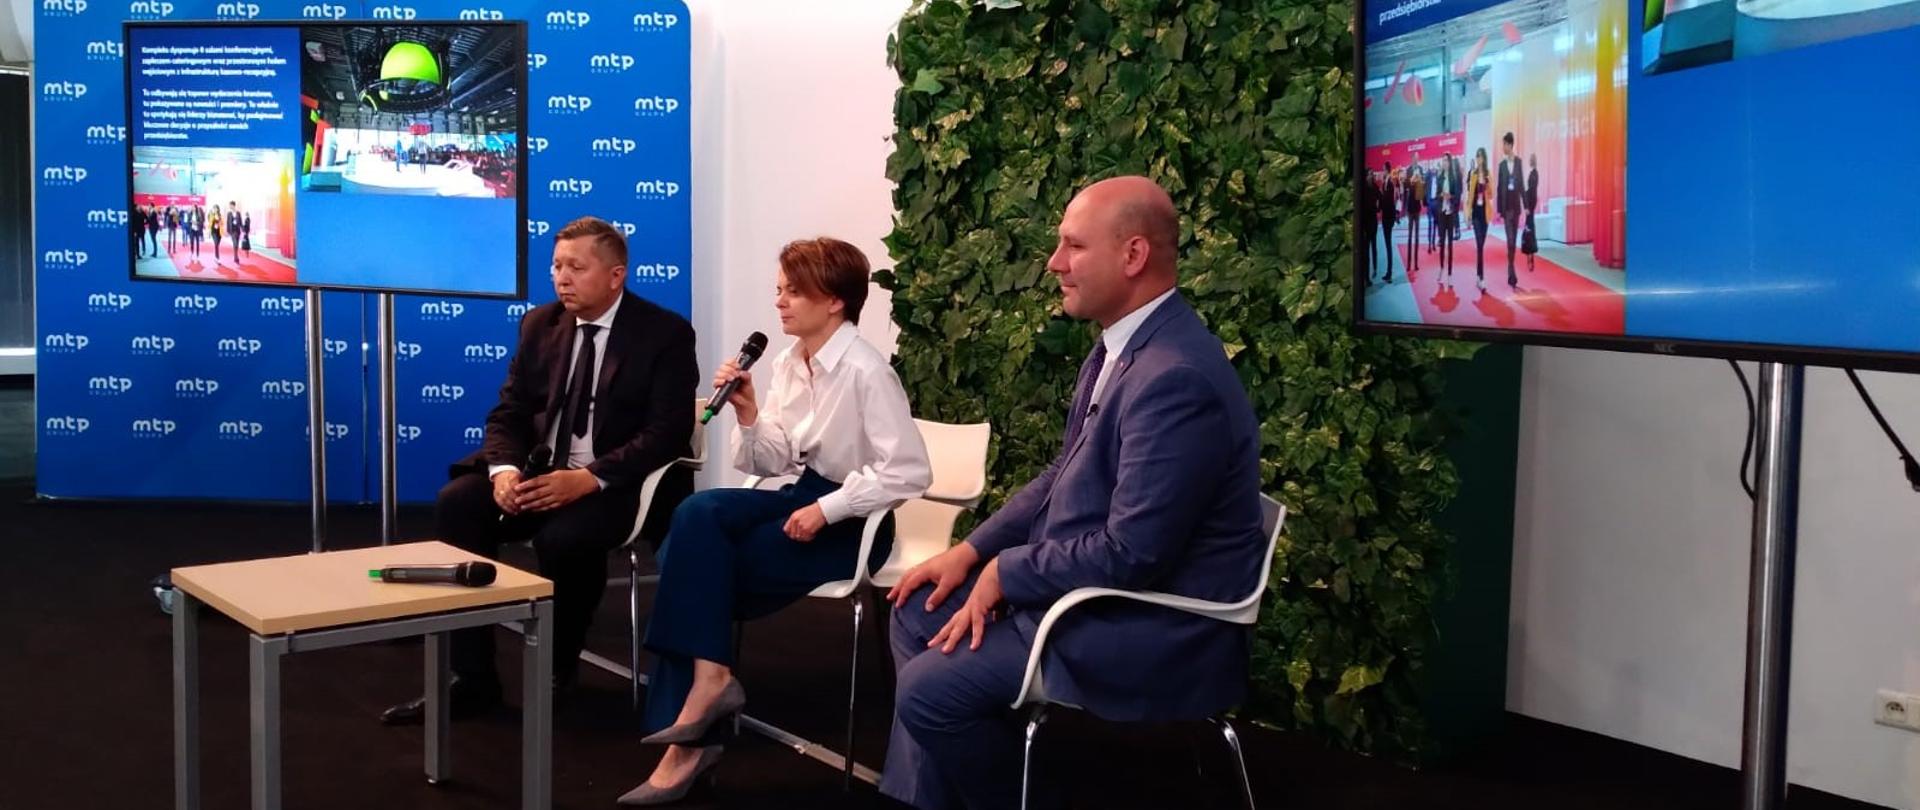 Trzy osoby siedzą obok siebie na scenie. W środku z mikrofonem w prawej dłoni siedzi wiceminister Jadwiga Emilewicz. 